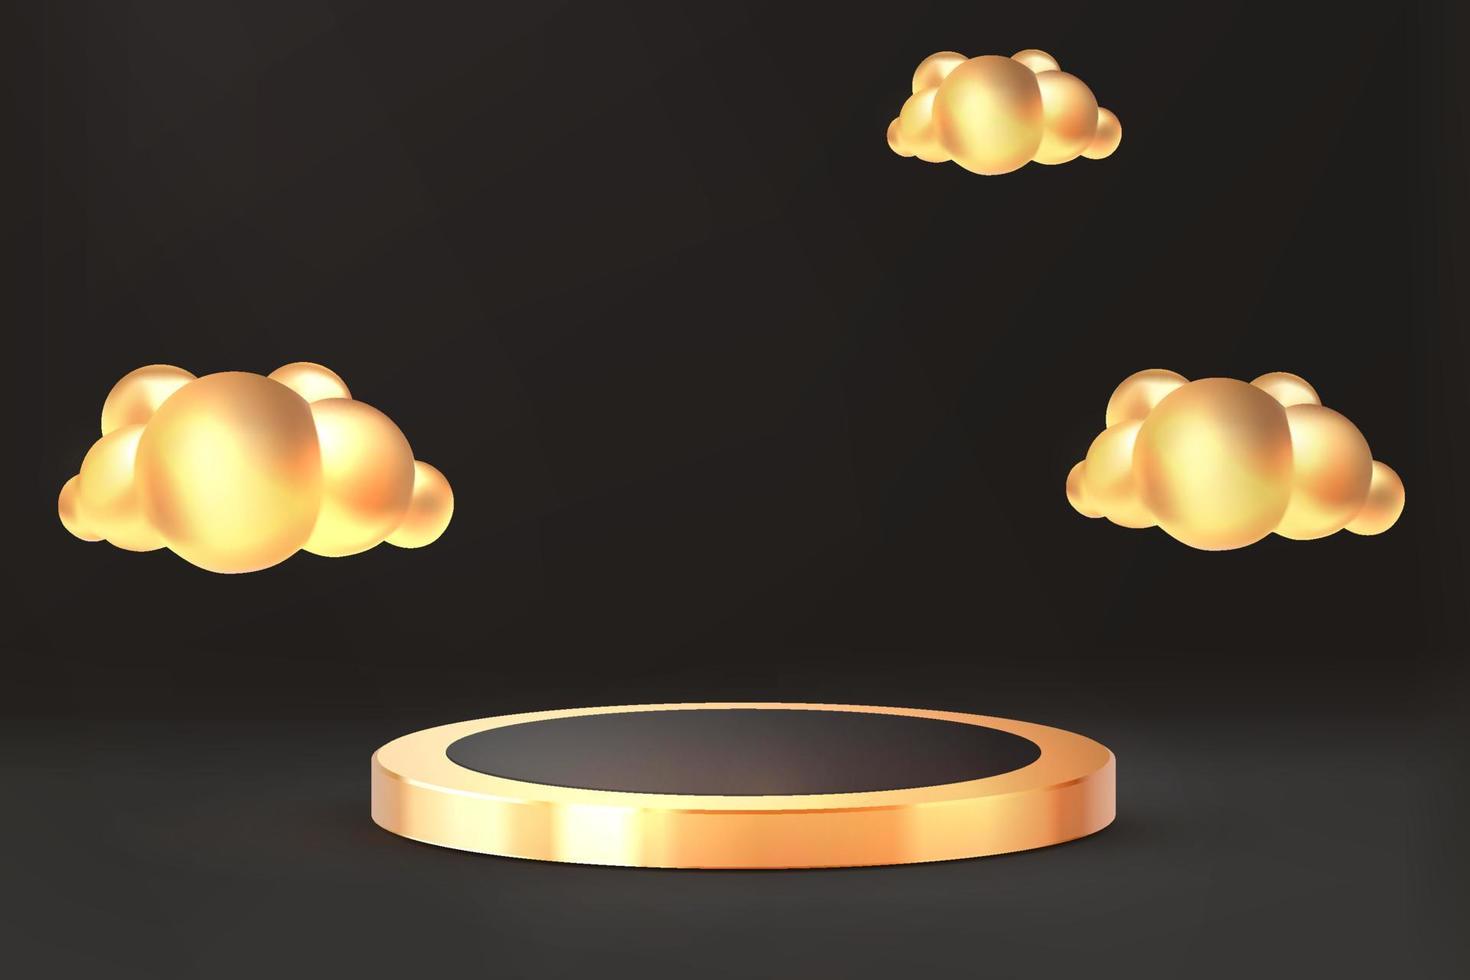 realistic golden cloud  podium 3d on dark scene background vector